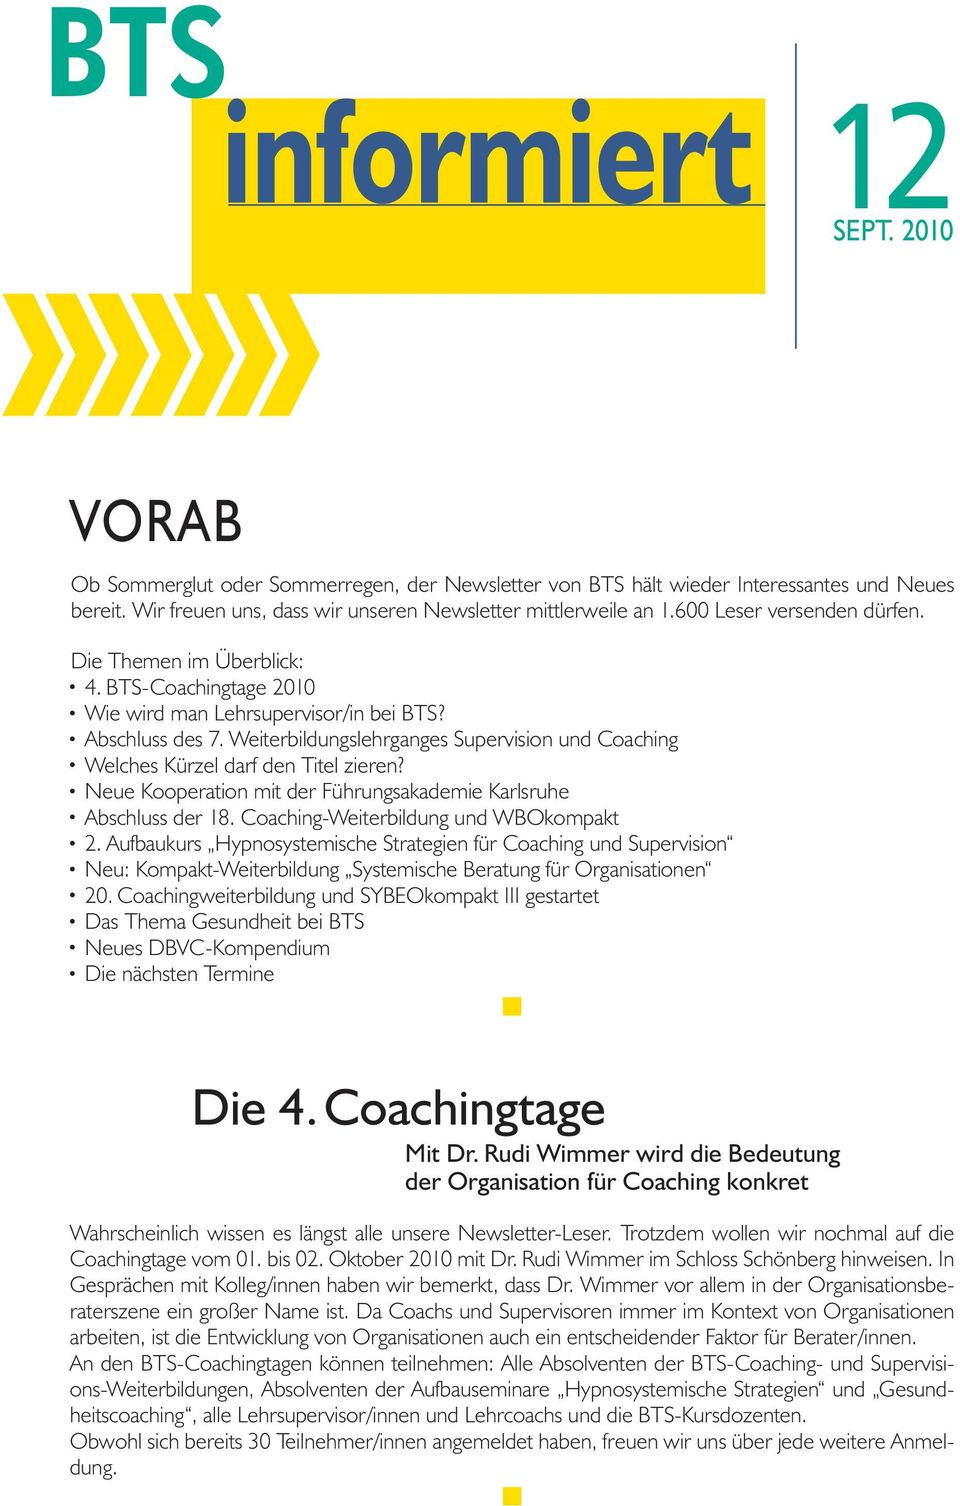 Neue Kooperation mit der Führungsakademie Karsruhe Abschuss der 18. Coaching-Weiterbidung und WBOkompakt 2.